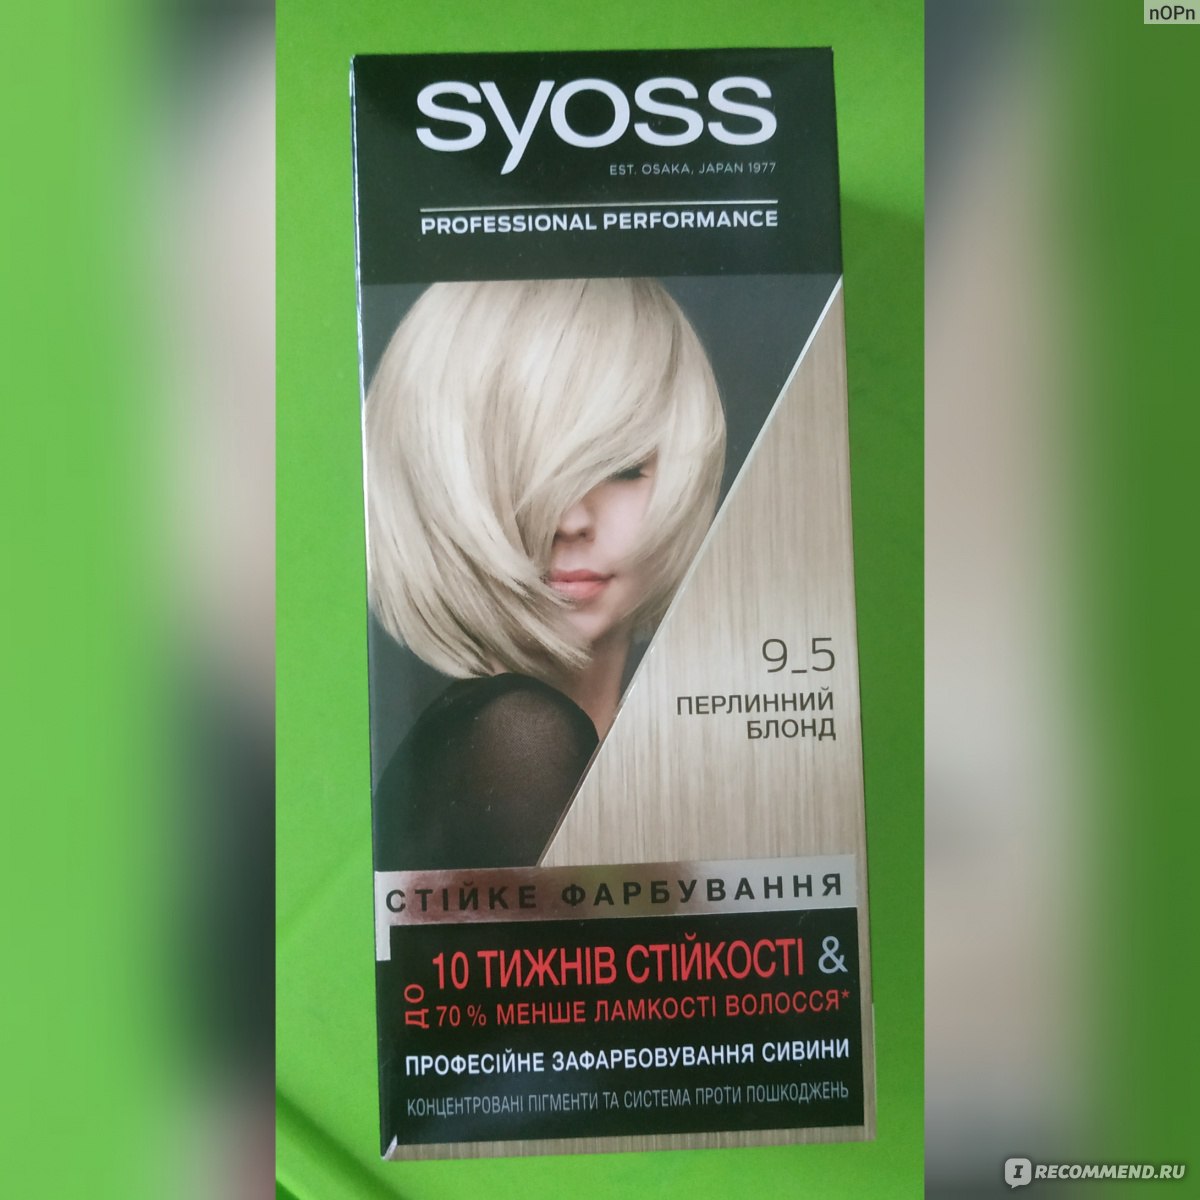 Краски для волос цвет-эксперт 12 02 ультрасветлый жемчужный блонд